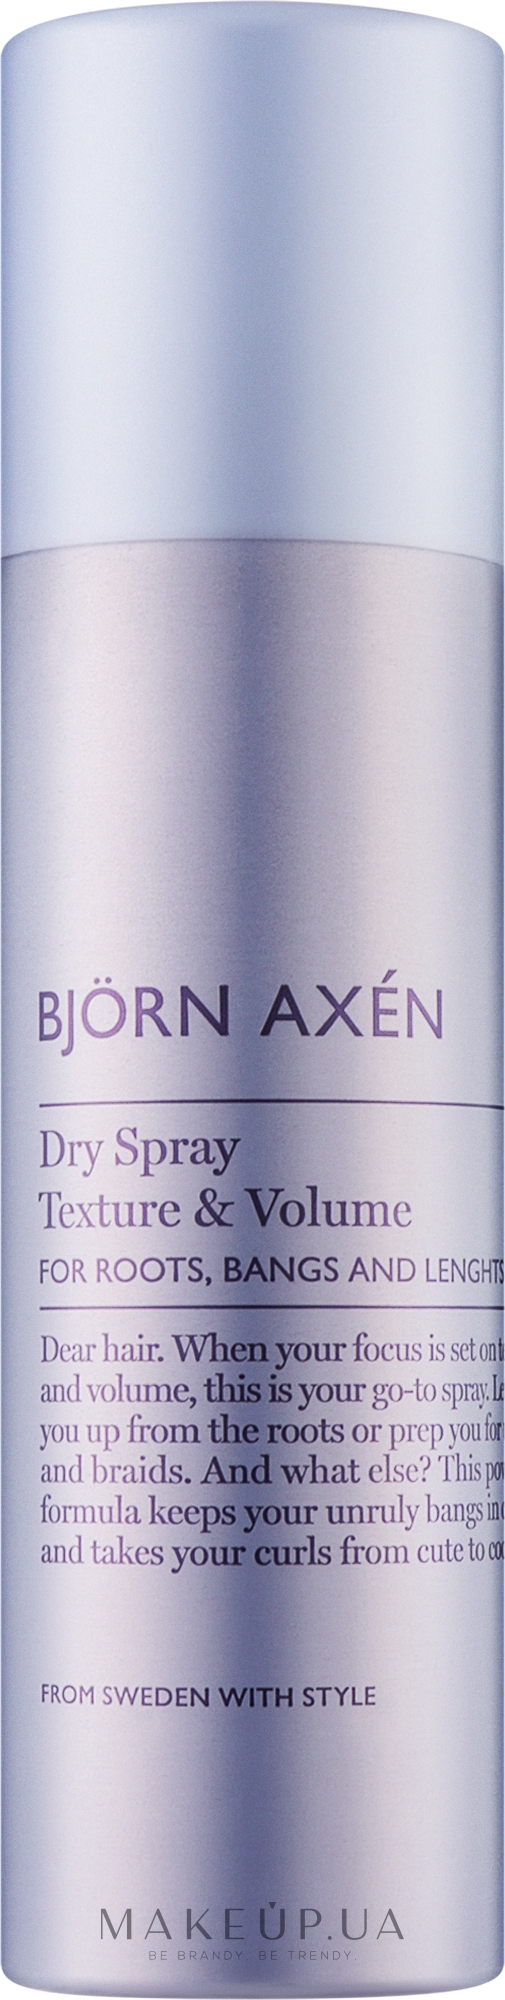 Сухий спрей для текстури та об'єму волосся - BjOrn AxEn Texture & Volume Dry Spray — фото 200ml